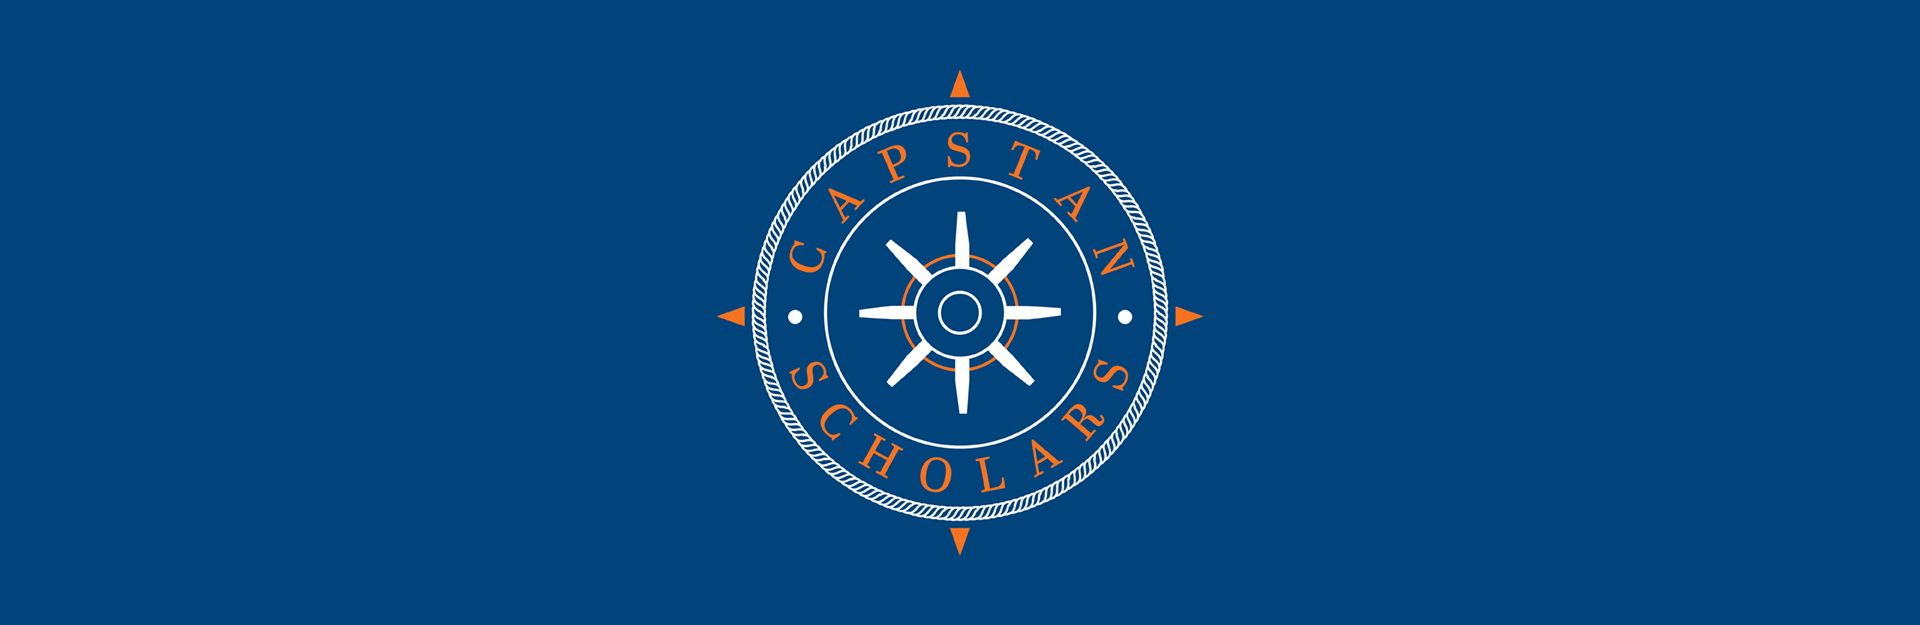 Capstan Scholars logo